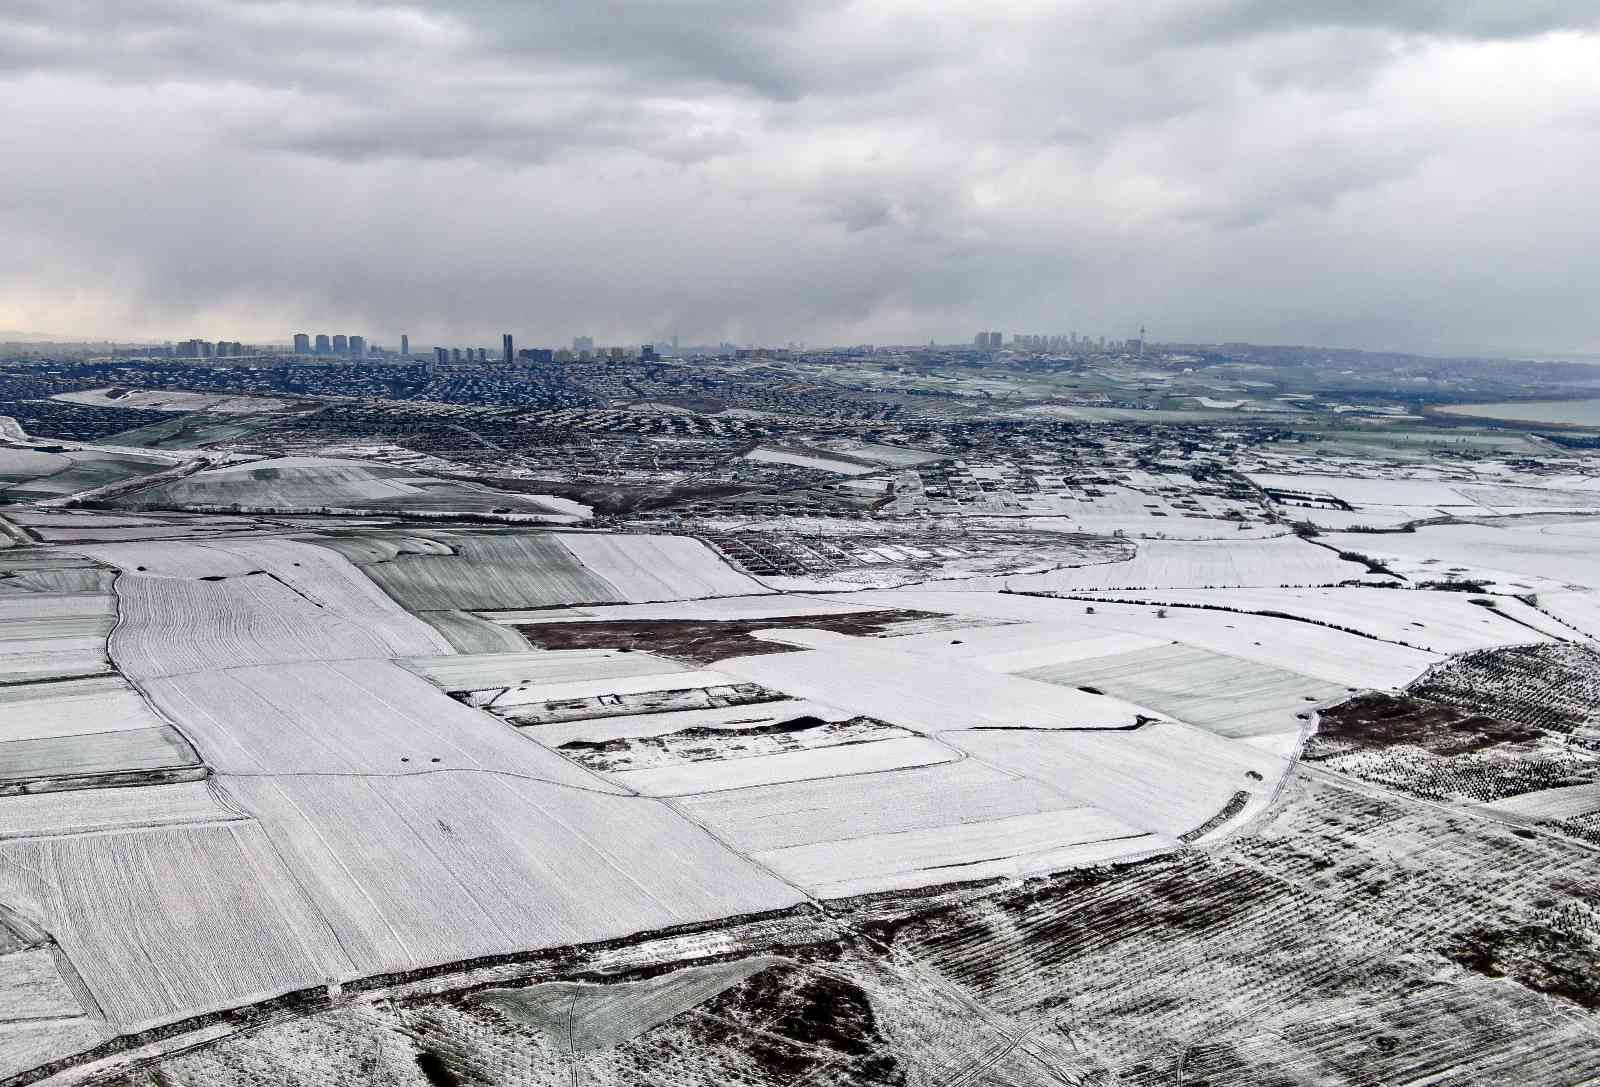 Karla kaplanan Büyükçekmece Gölü’nün çevresi  havadan görüntülendi #istanbul